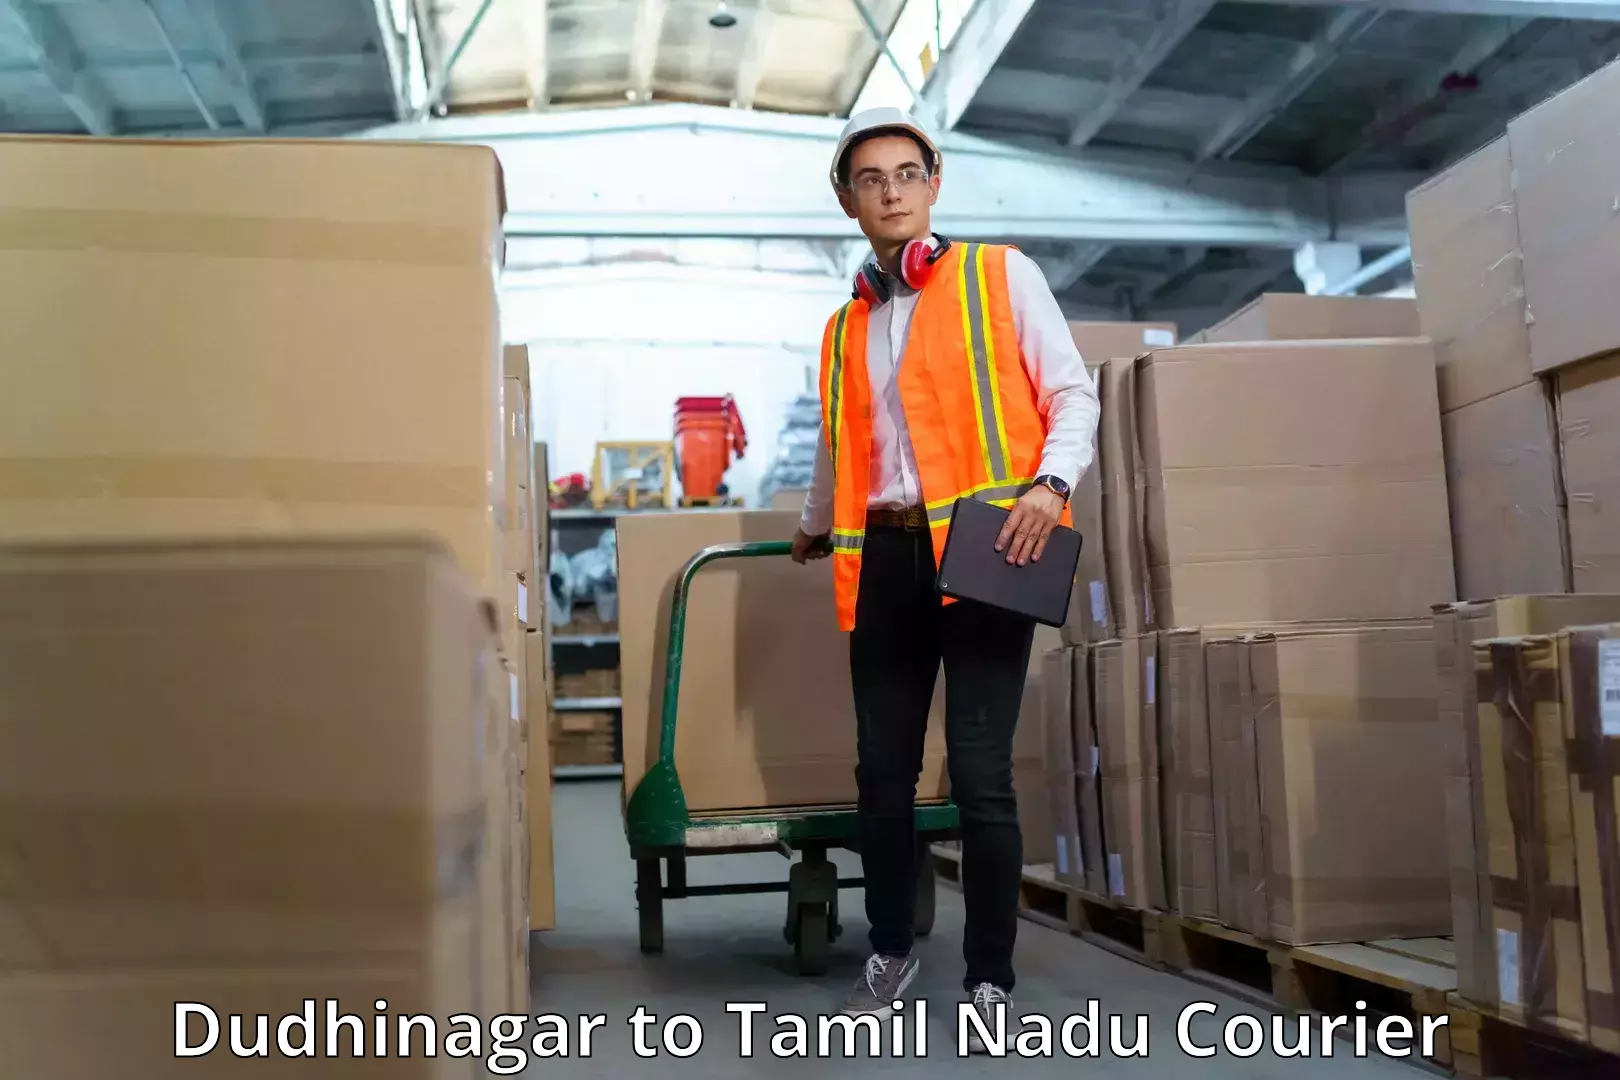 Premium courier services in Dudhinagar to Tamil Nadu